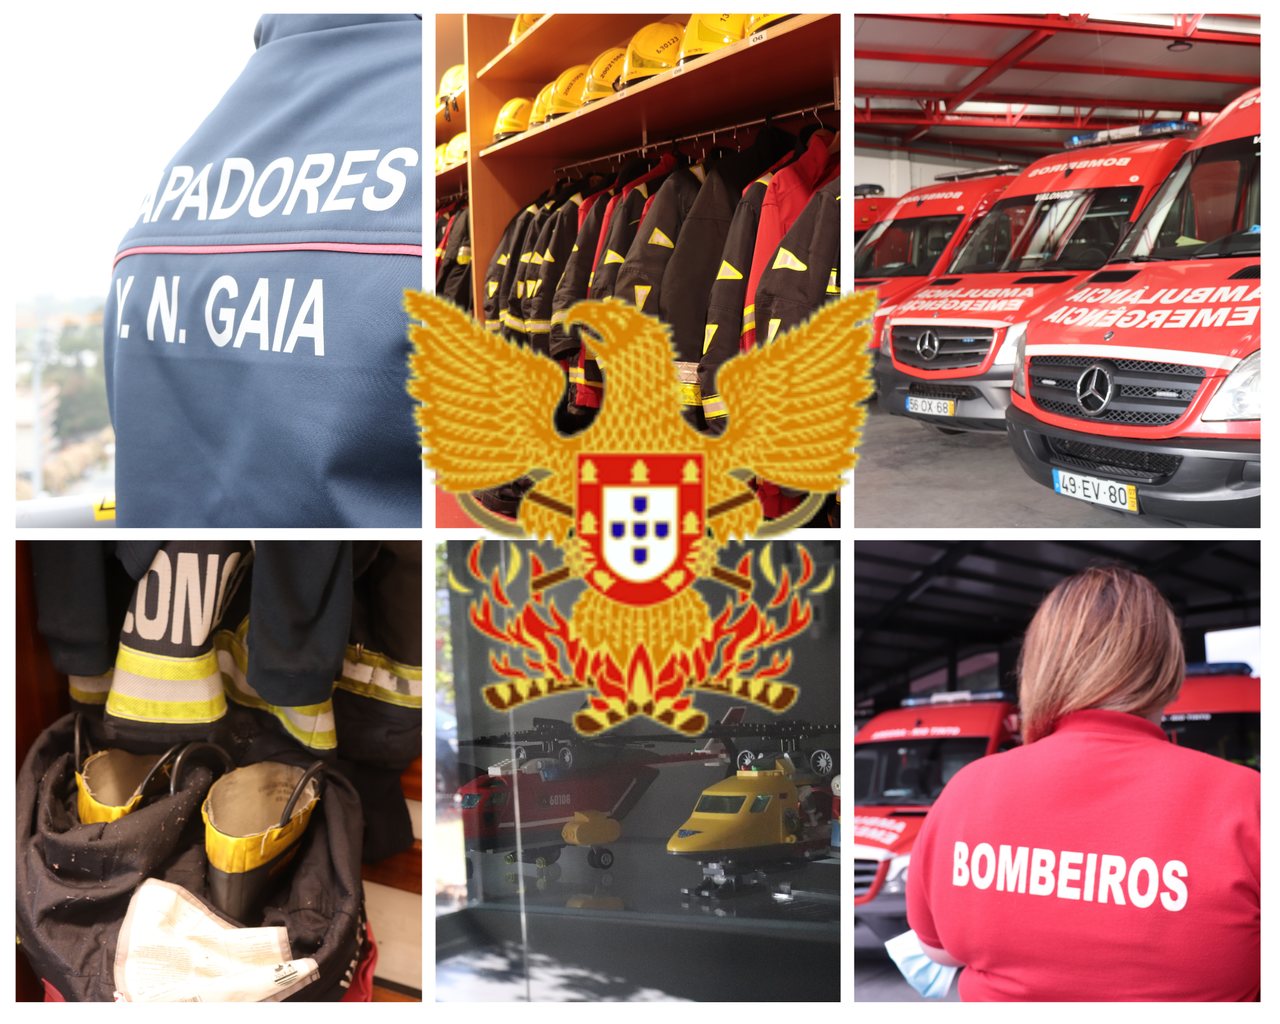 Bombeiros em Portugal: um trabalho para além da farda